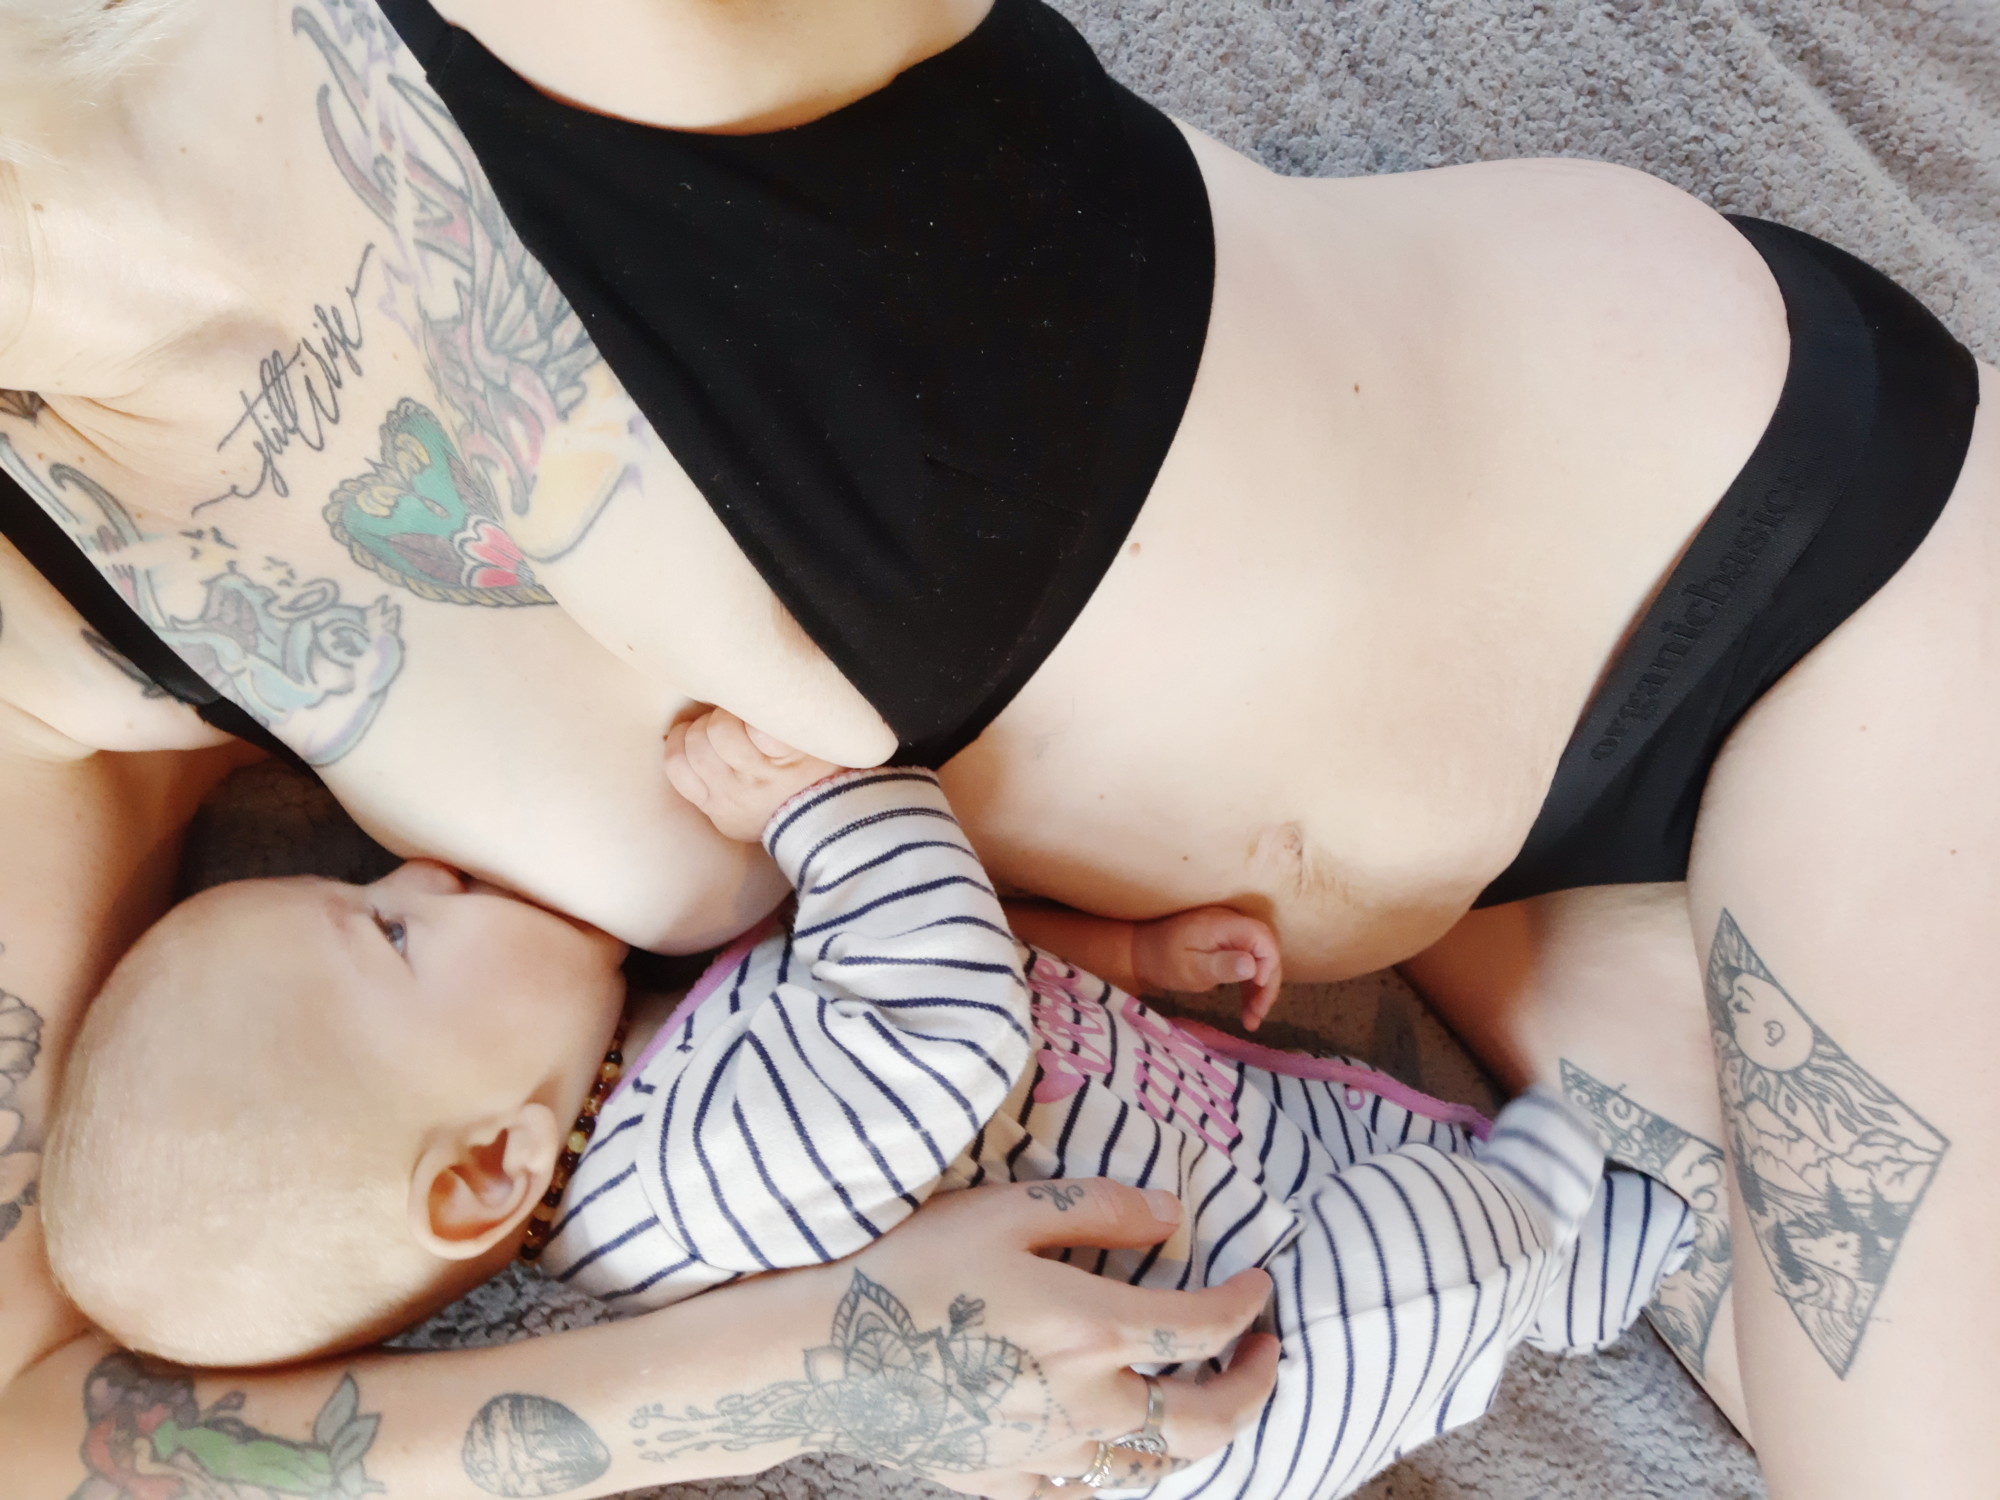 Loving our Postpartum Bodies